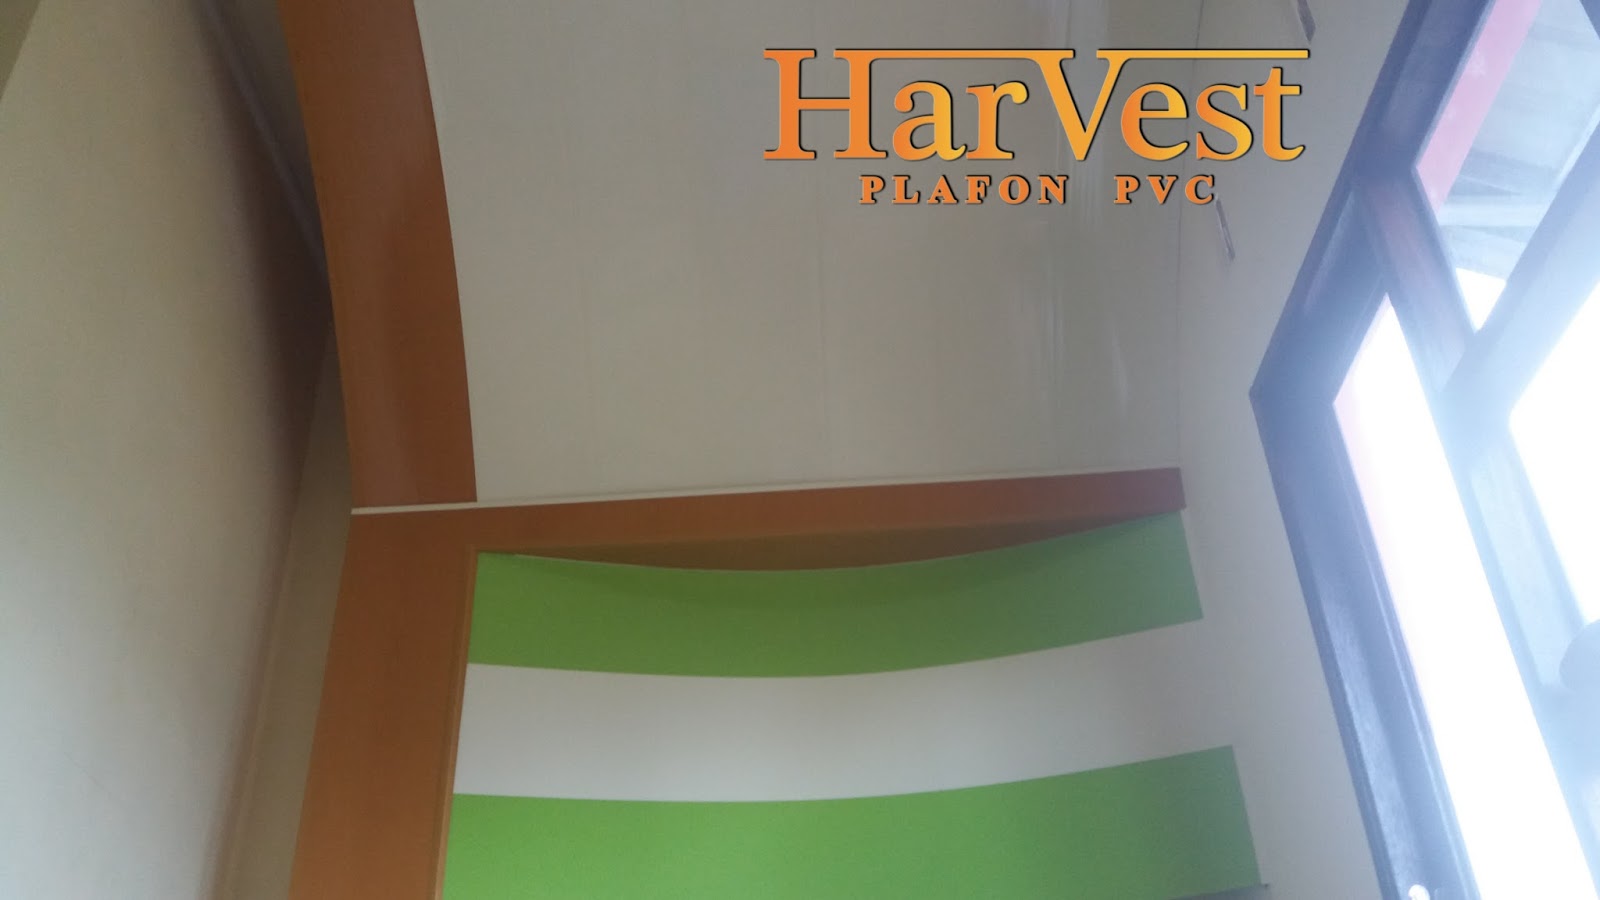 Harvest Plafon PVC Harvest Plafon PVC hadir di Siborong 